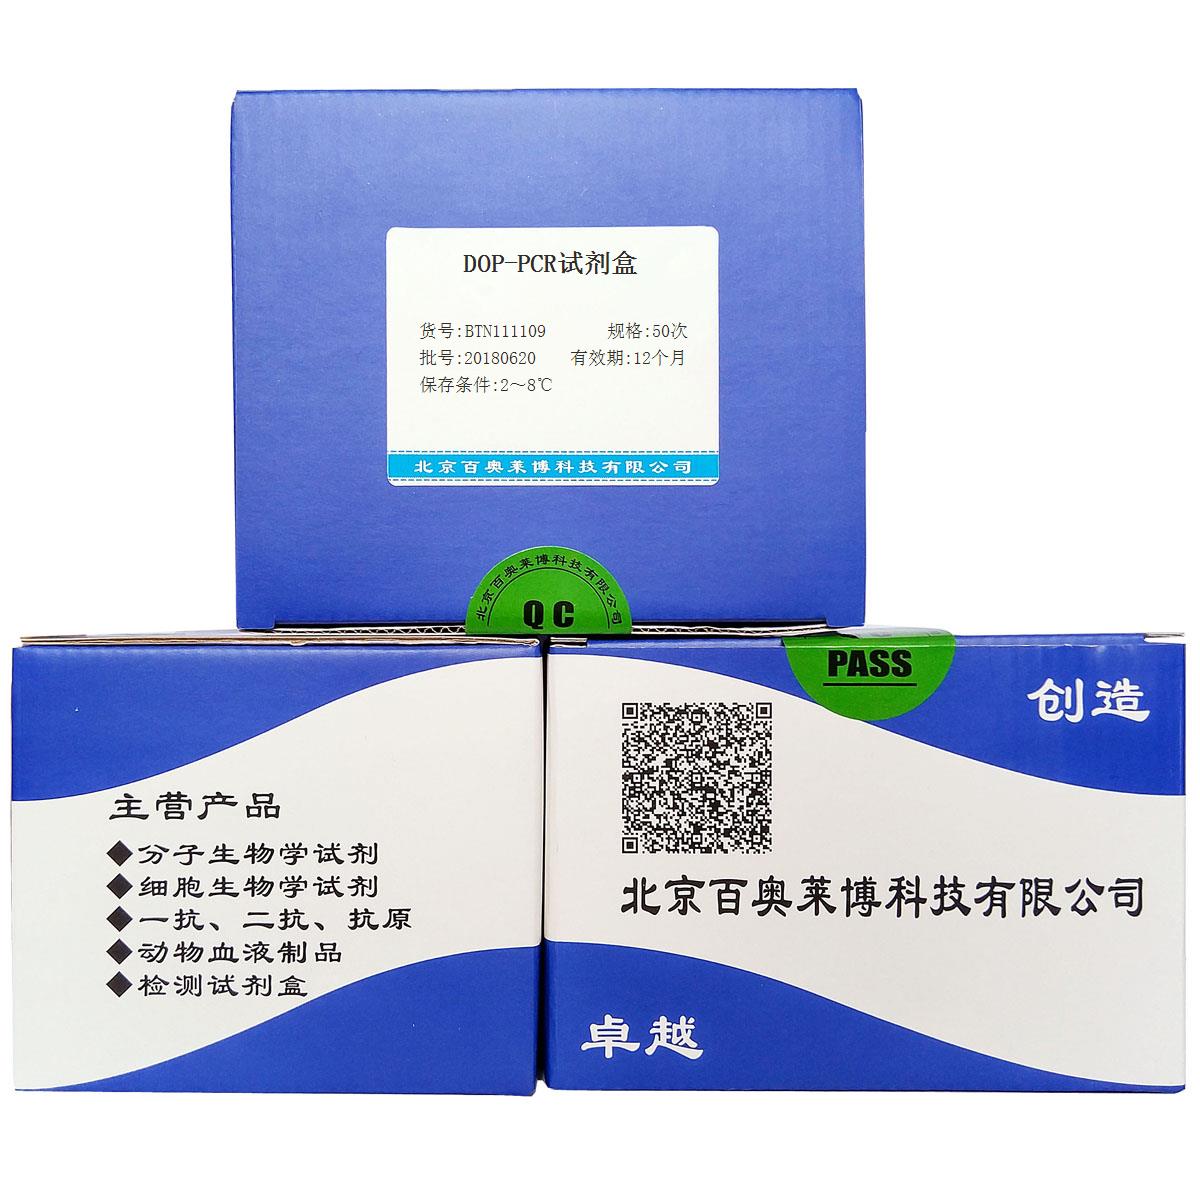 BTN111109型DOP-PCR试剂盒优惠